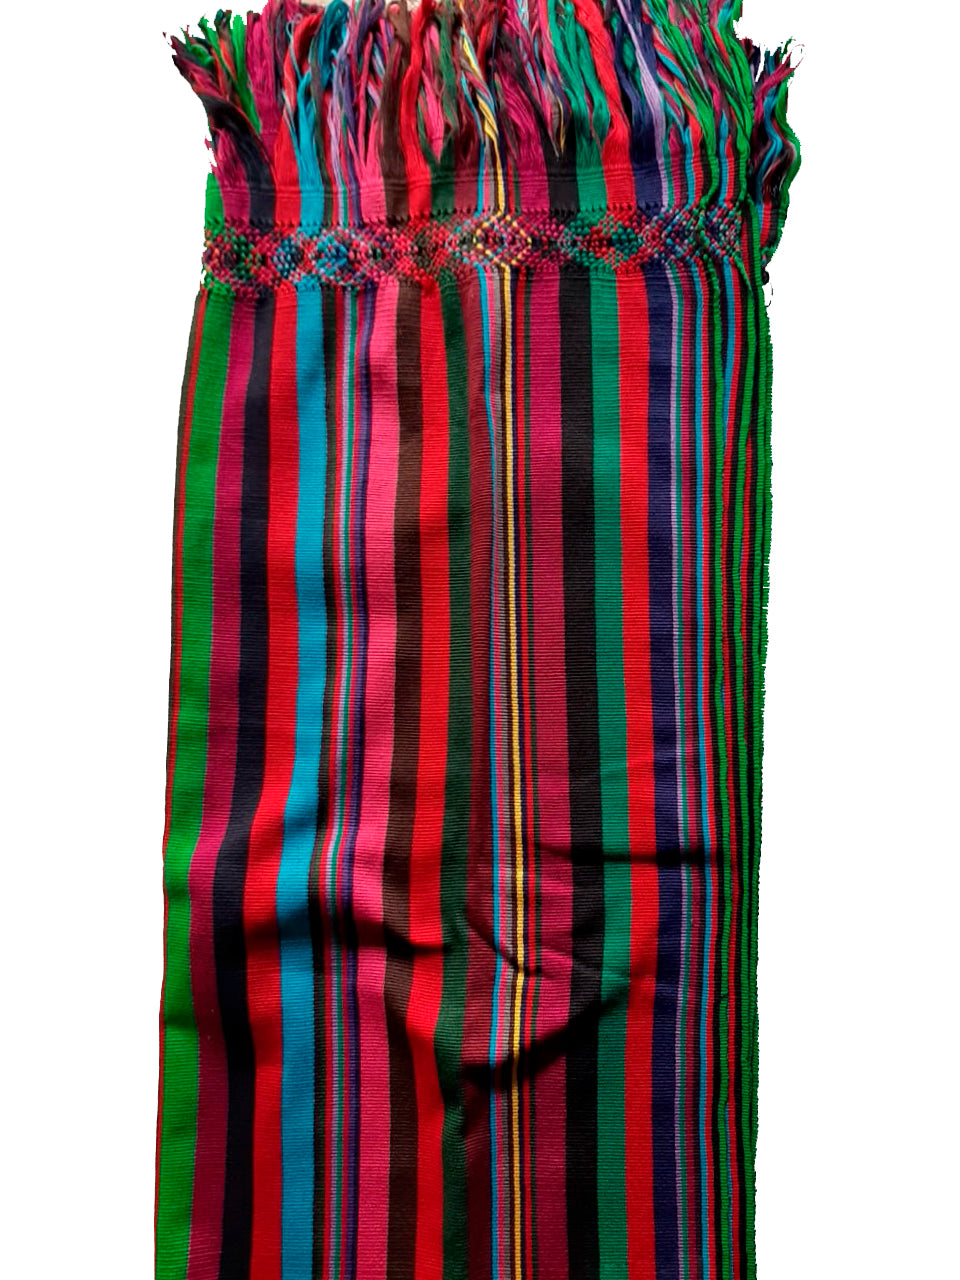 Rebozo de algodón con líneas de colores